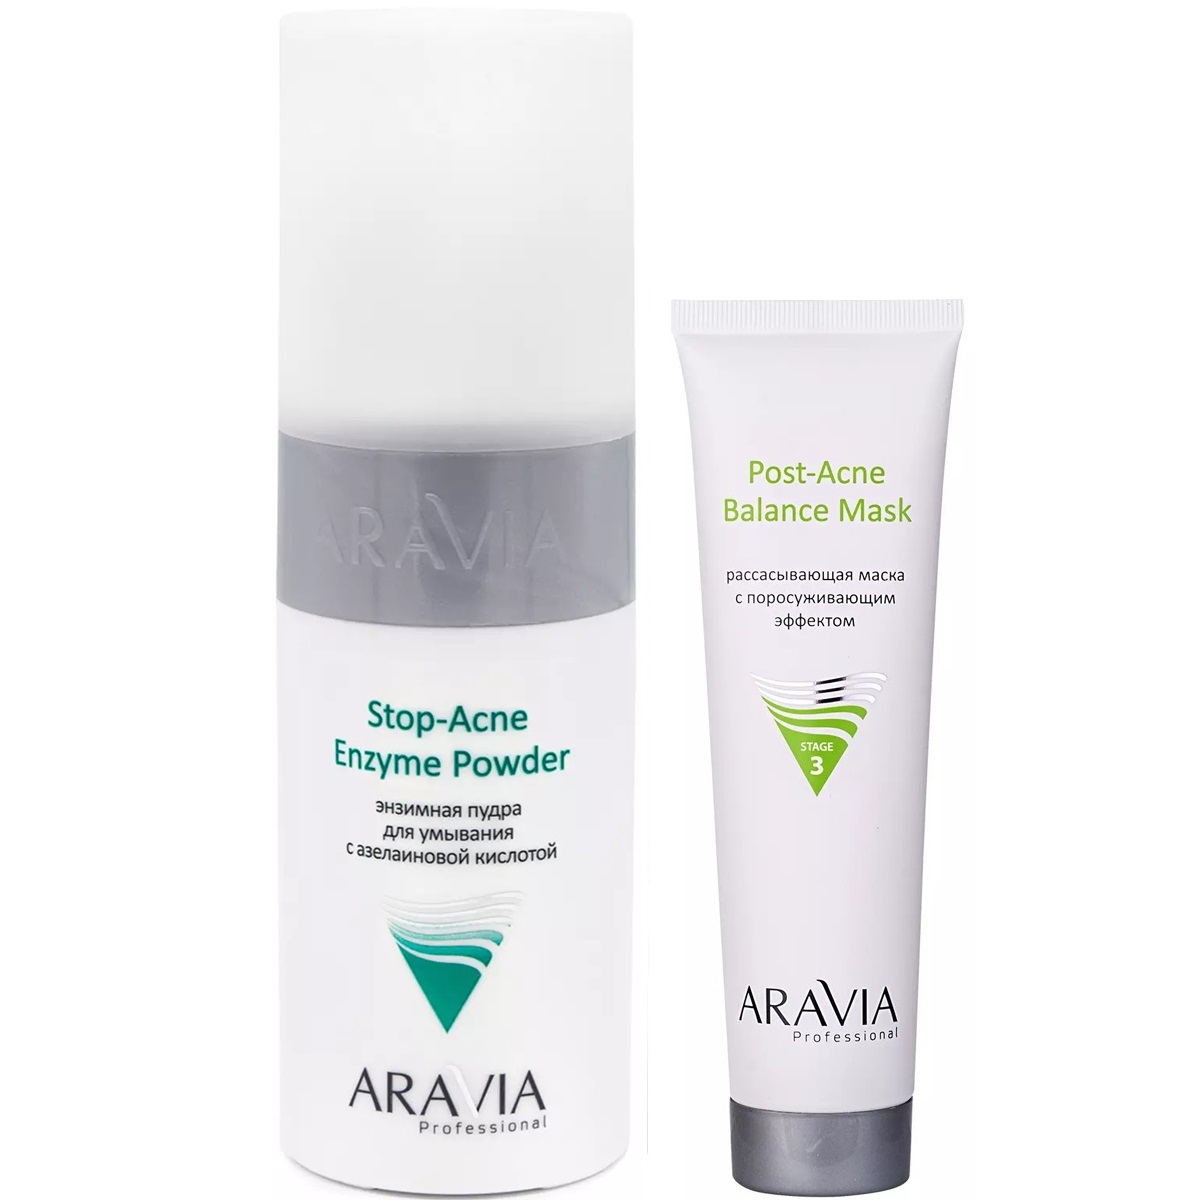 Aravia Professional Набор для проблемной и жирной кожи: маска, 100 мл + энзимная пудра, 150 мл (Aravia Professional, Уход за лицом) stop acne mask маска поросуживающая для жирной и комбинированной кожи